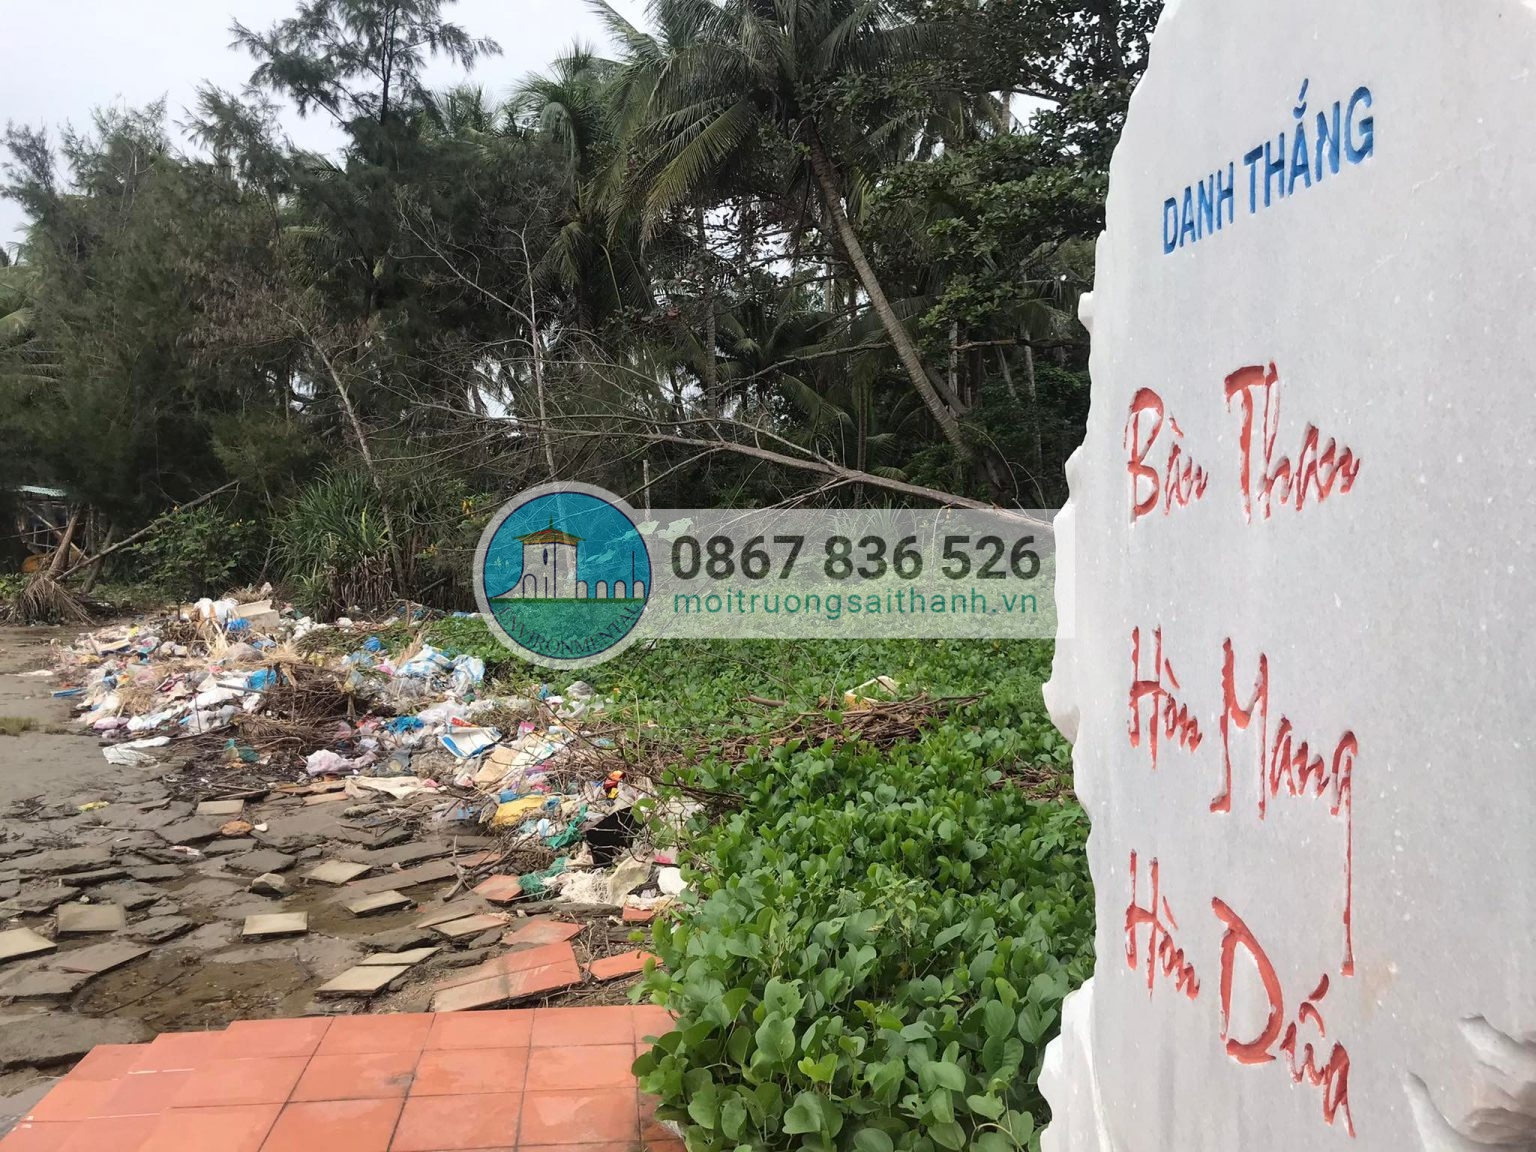 Người dân ở chợ Tam Hải thiếu ý thức khi vứt rác tràn lan xuống sông.